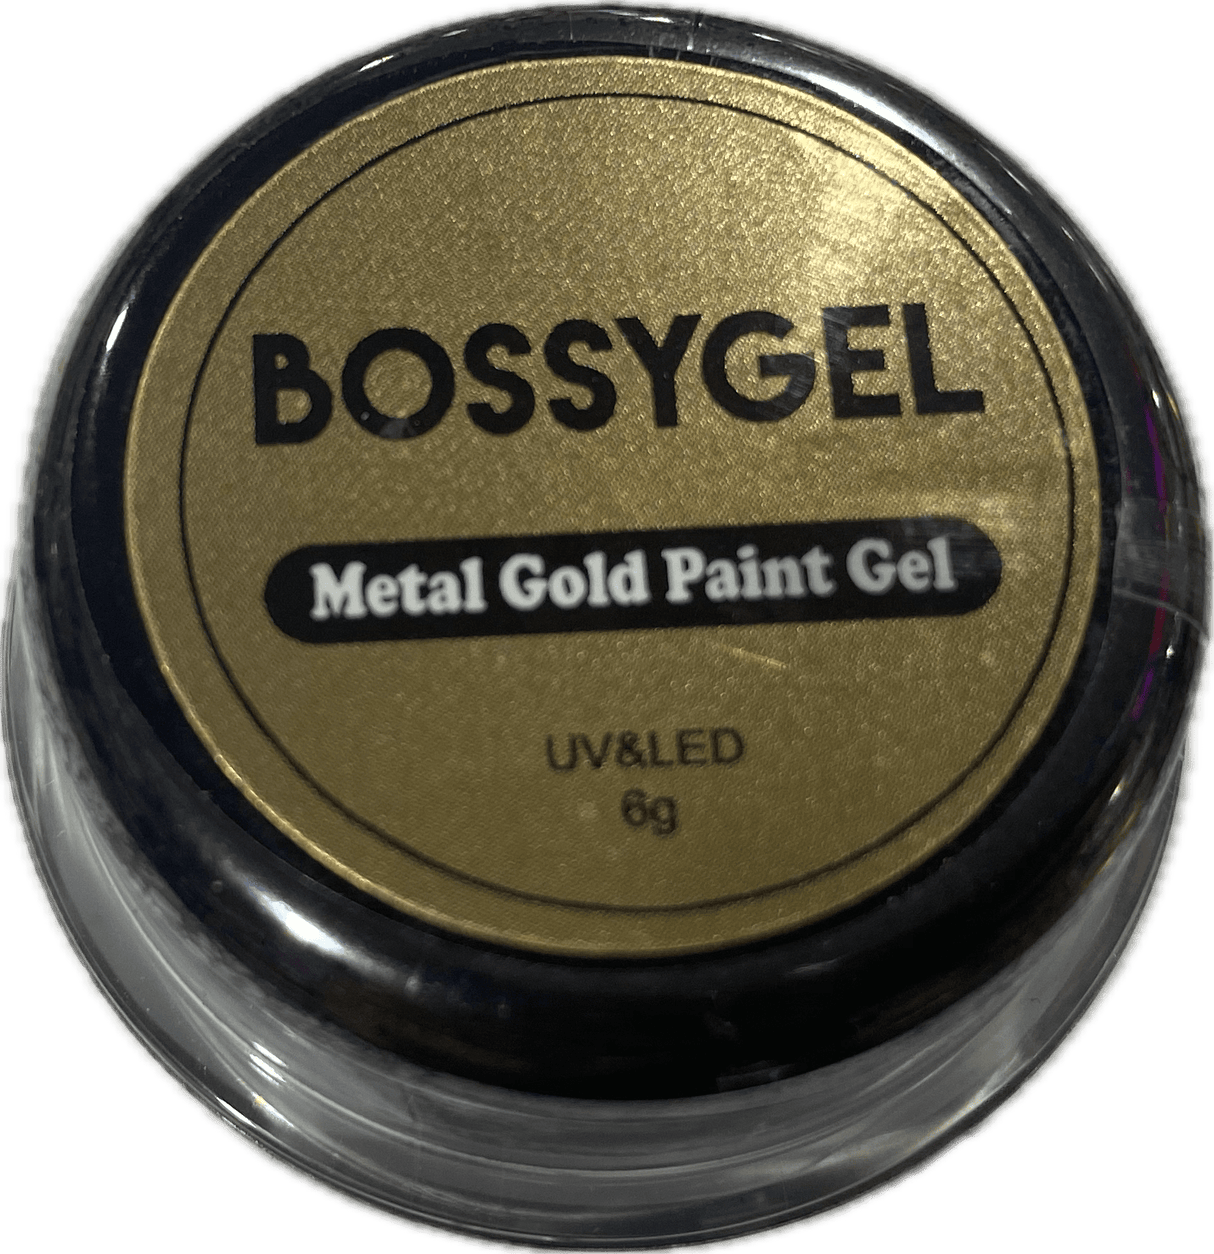 Bossy Metal Paint Gel